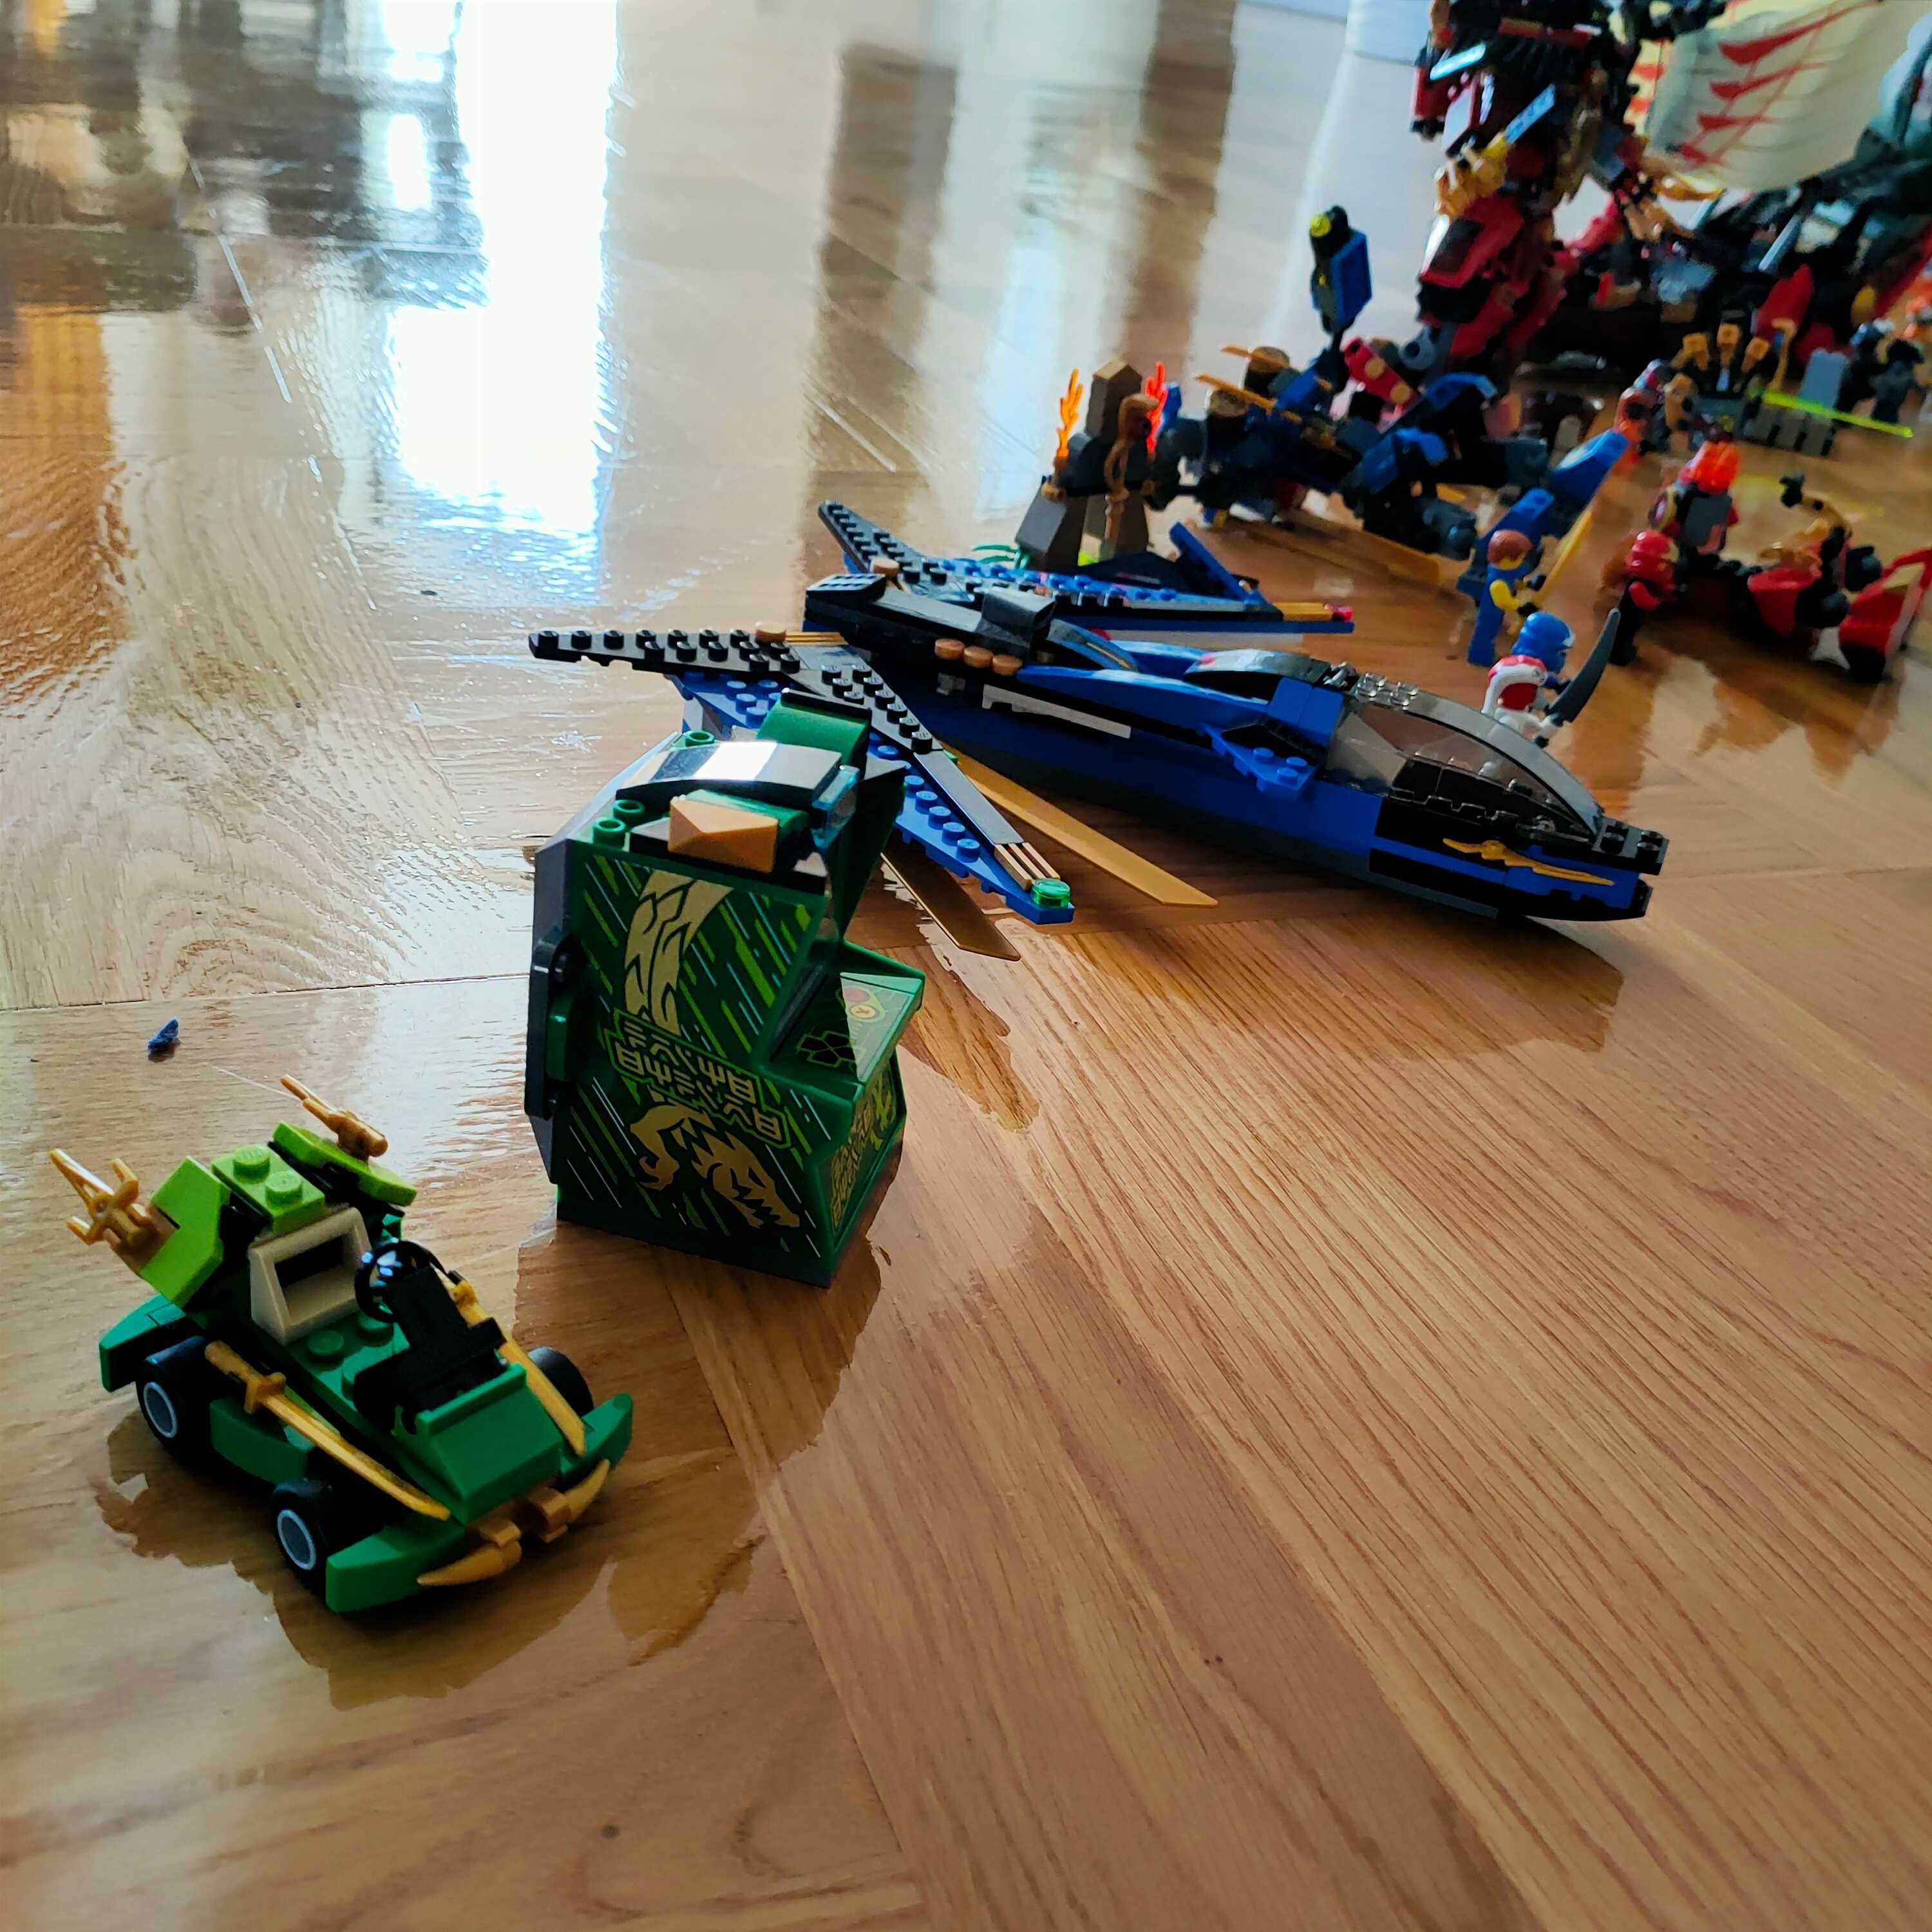 Wielki zestaw Lego Ninjago 9446, 9448, 9442, 70500, 70532 i inne